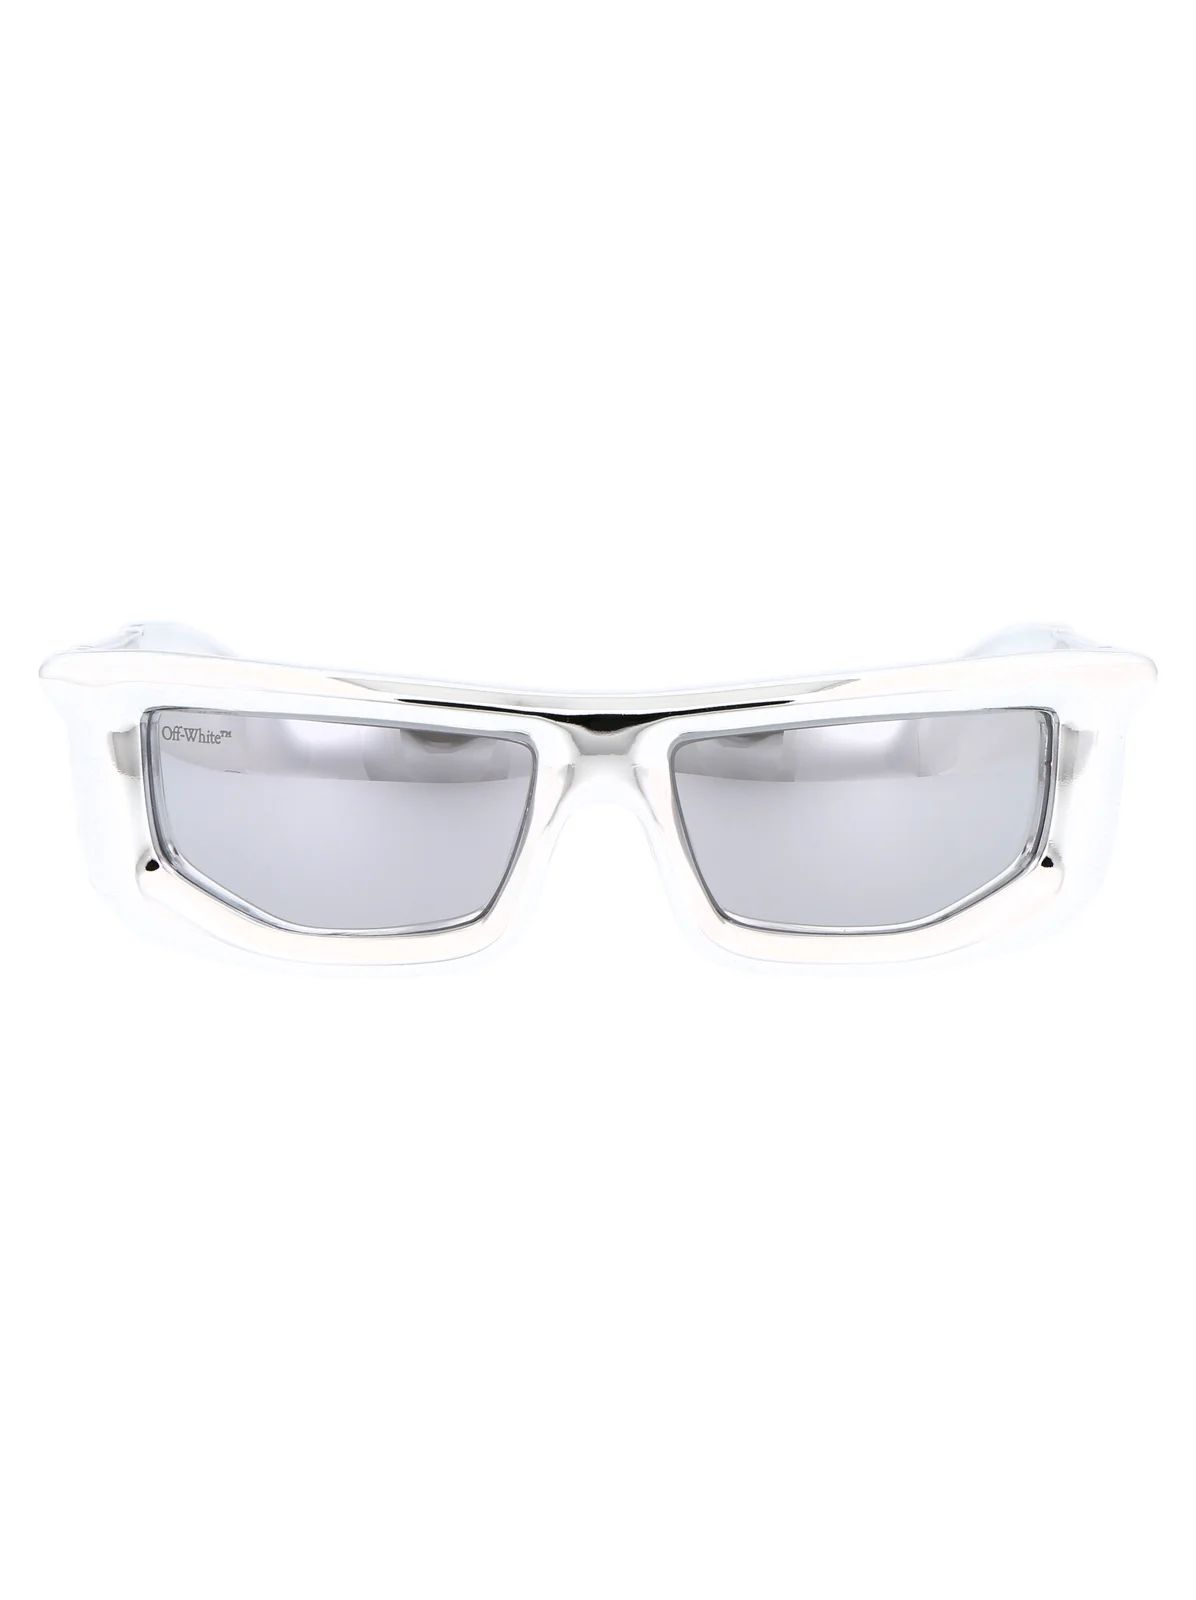 Off-White Rectangular Frame Sunglasses | Cettire Global